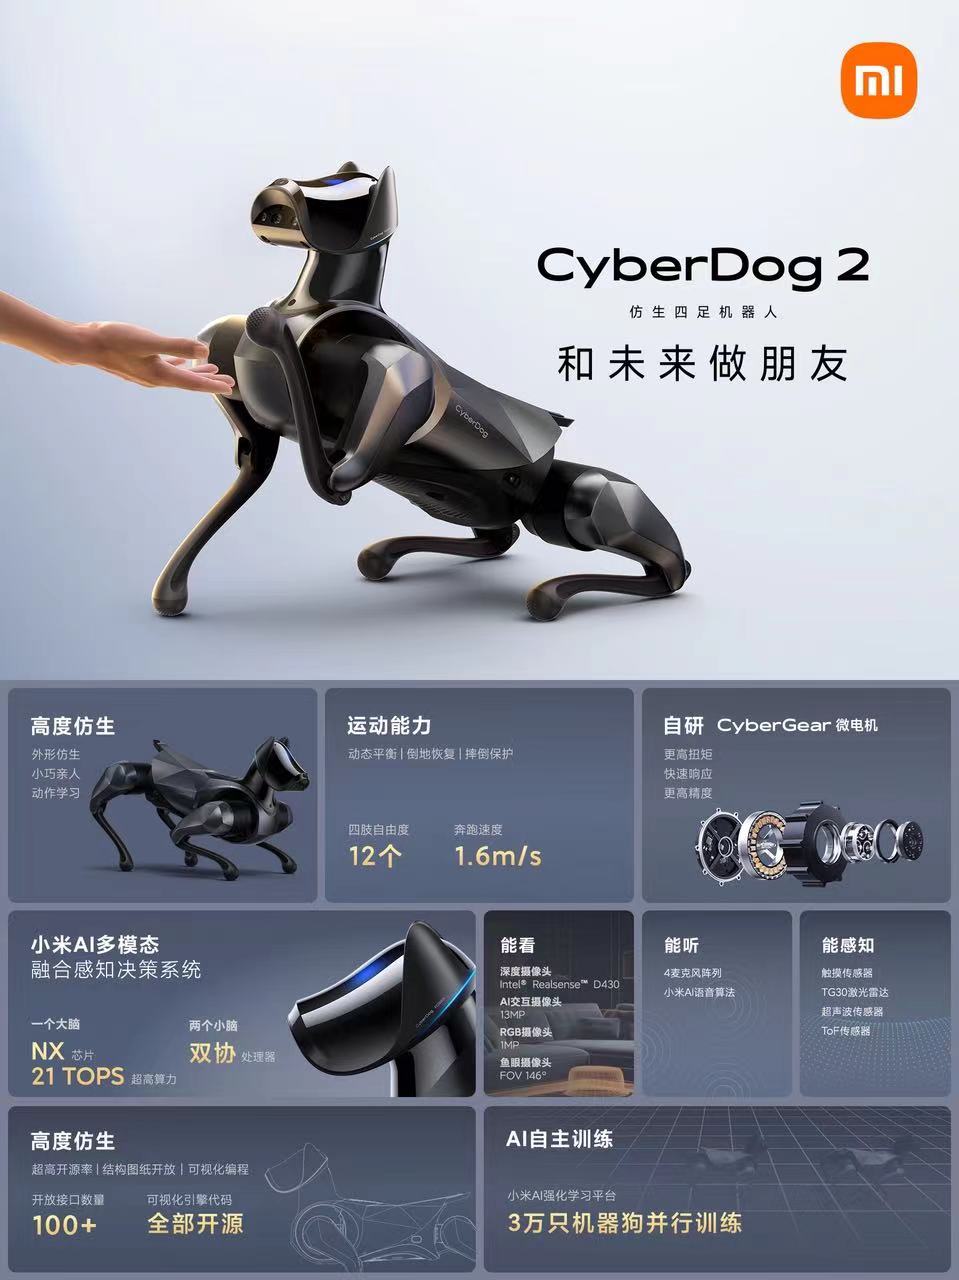 小米仿生四足机器人 CyberDog 2 配备 21 TOPS 算力 AI 处理器